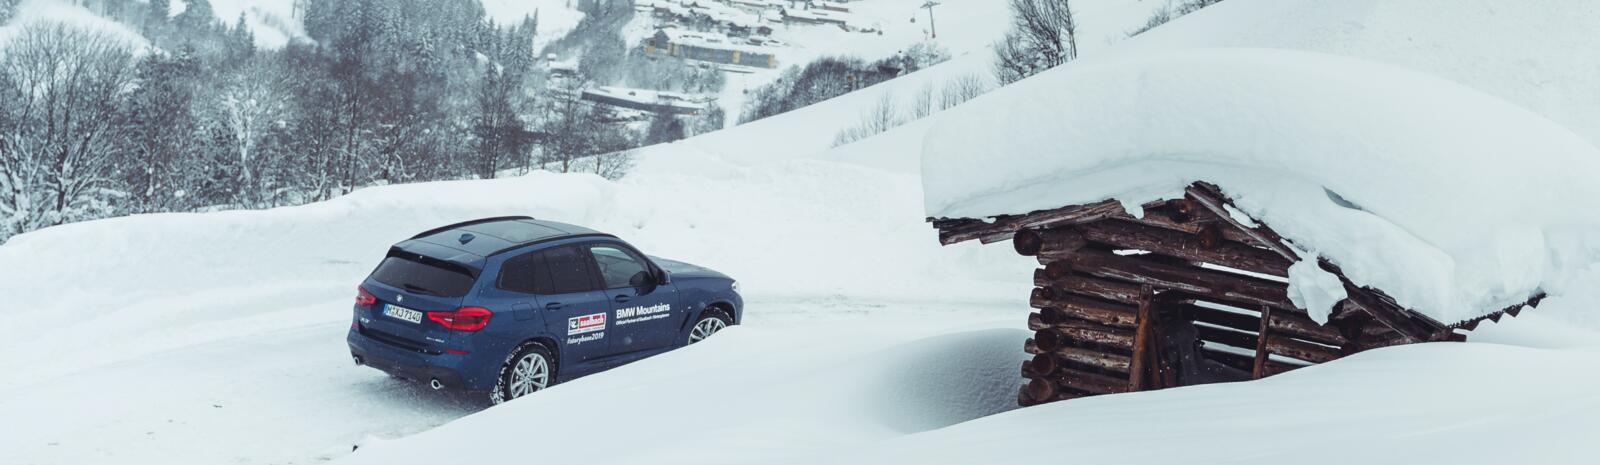 Anreise mit dem Auto in das Skigebiet Saalbach Hinterglemm  | © Max Fortner